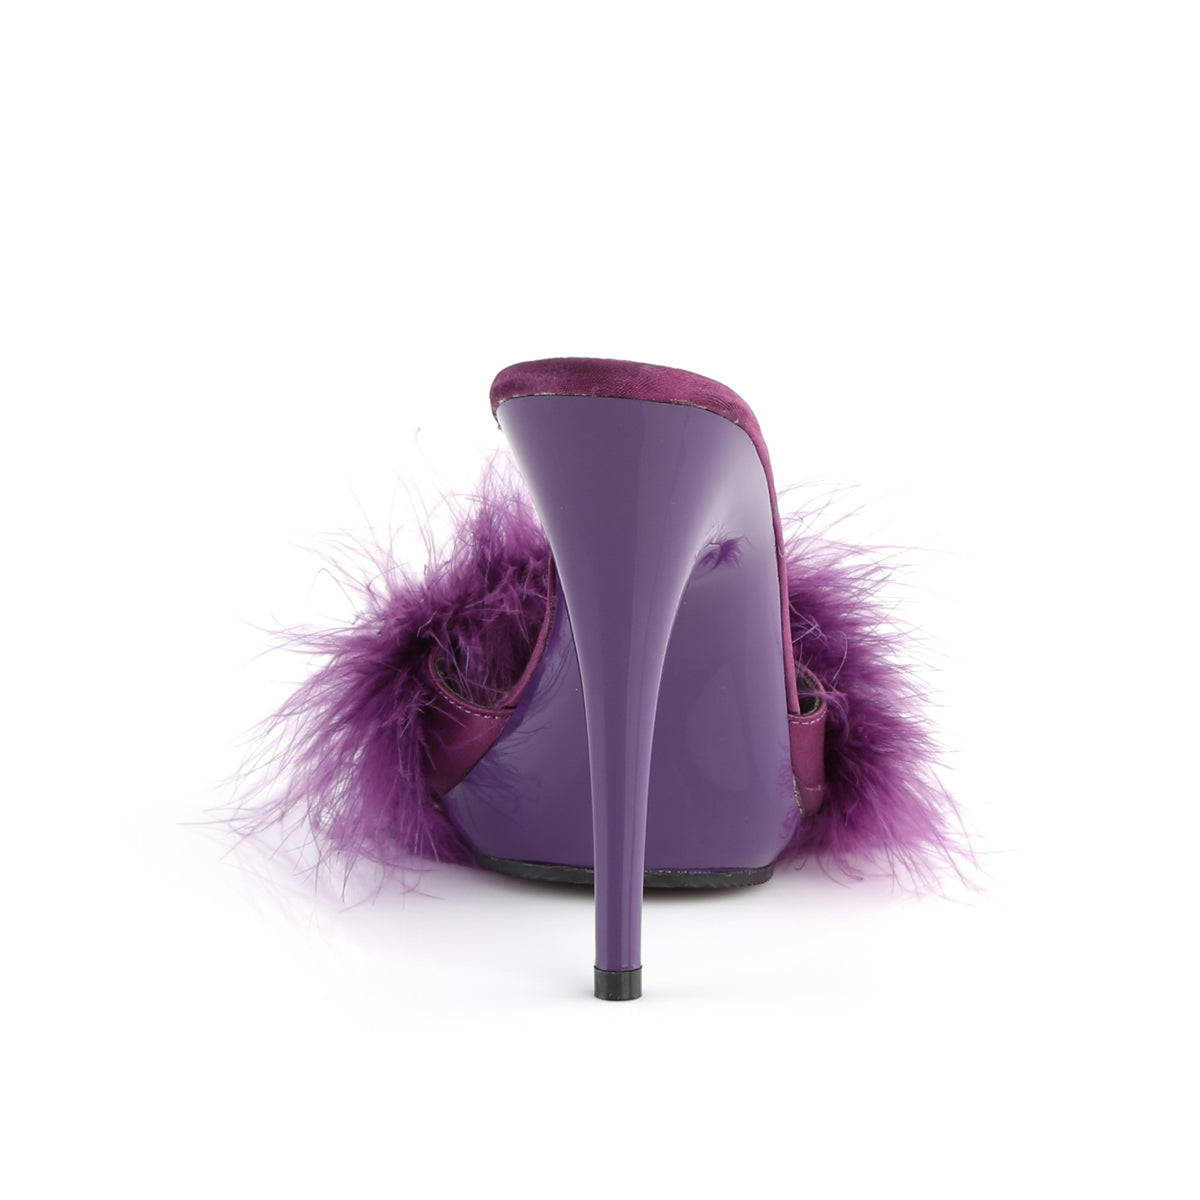 Fabulicious Sandales pour femmes POISE-501f violet satin-marabou fourrure / violet